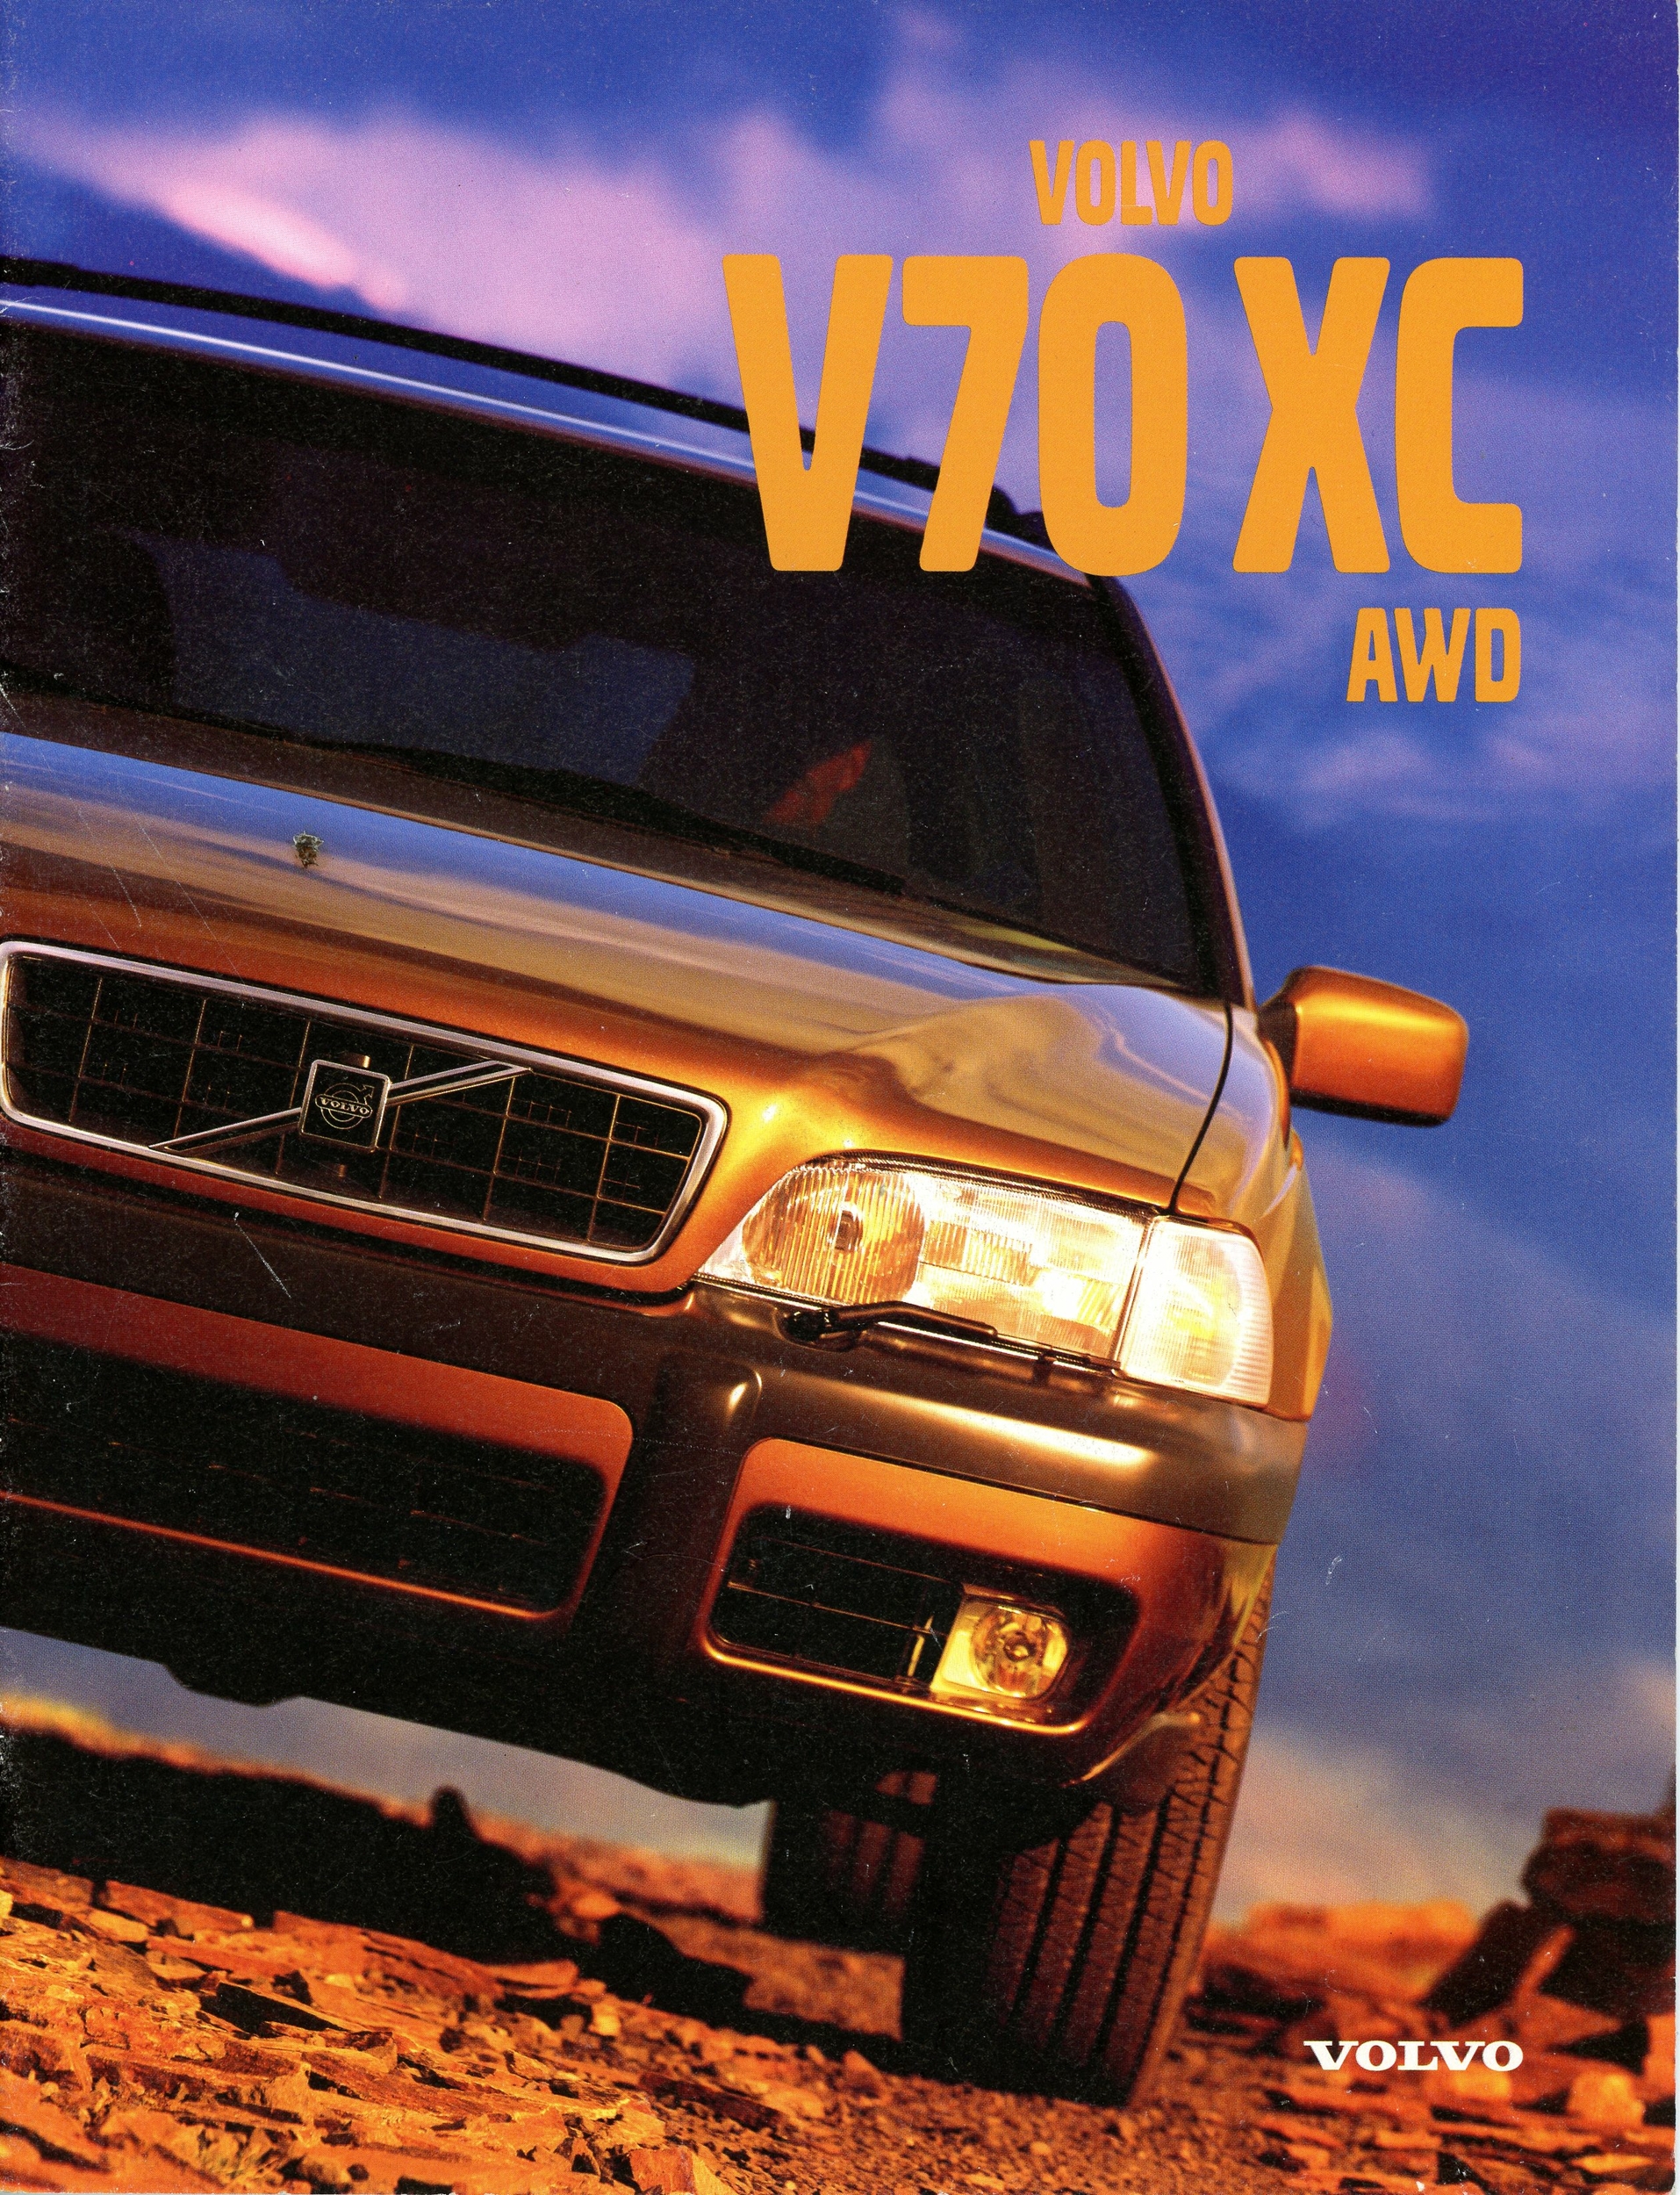 VOLVO V70 XC AWD - BROCHURE AUTO VOLVO 1998